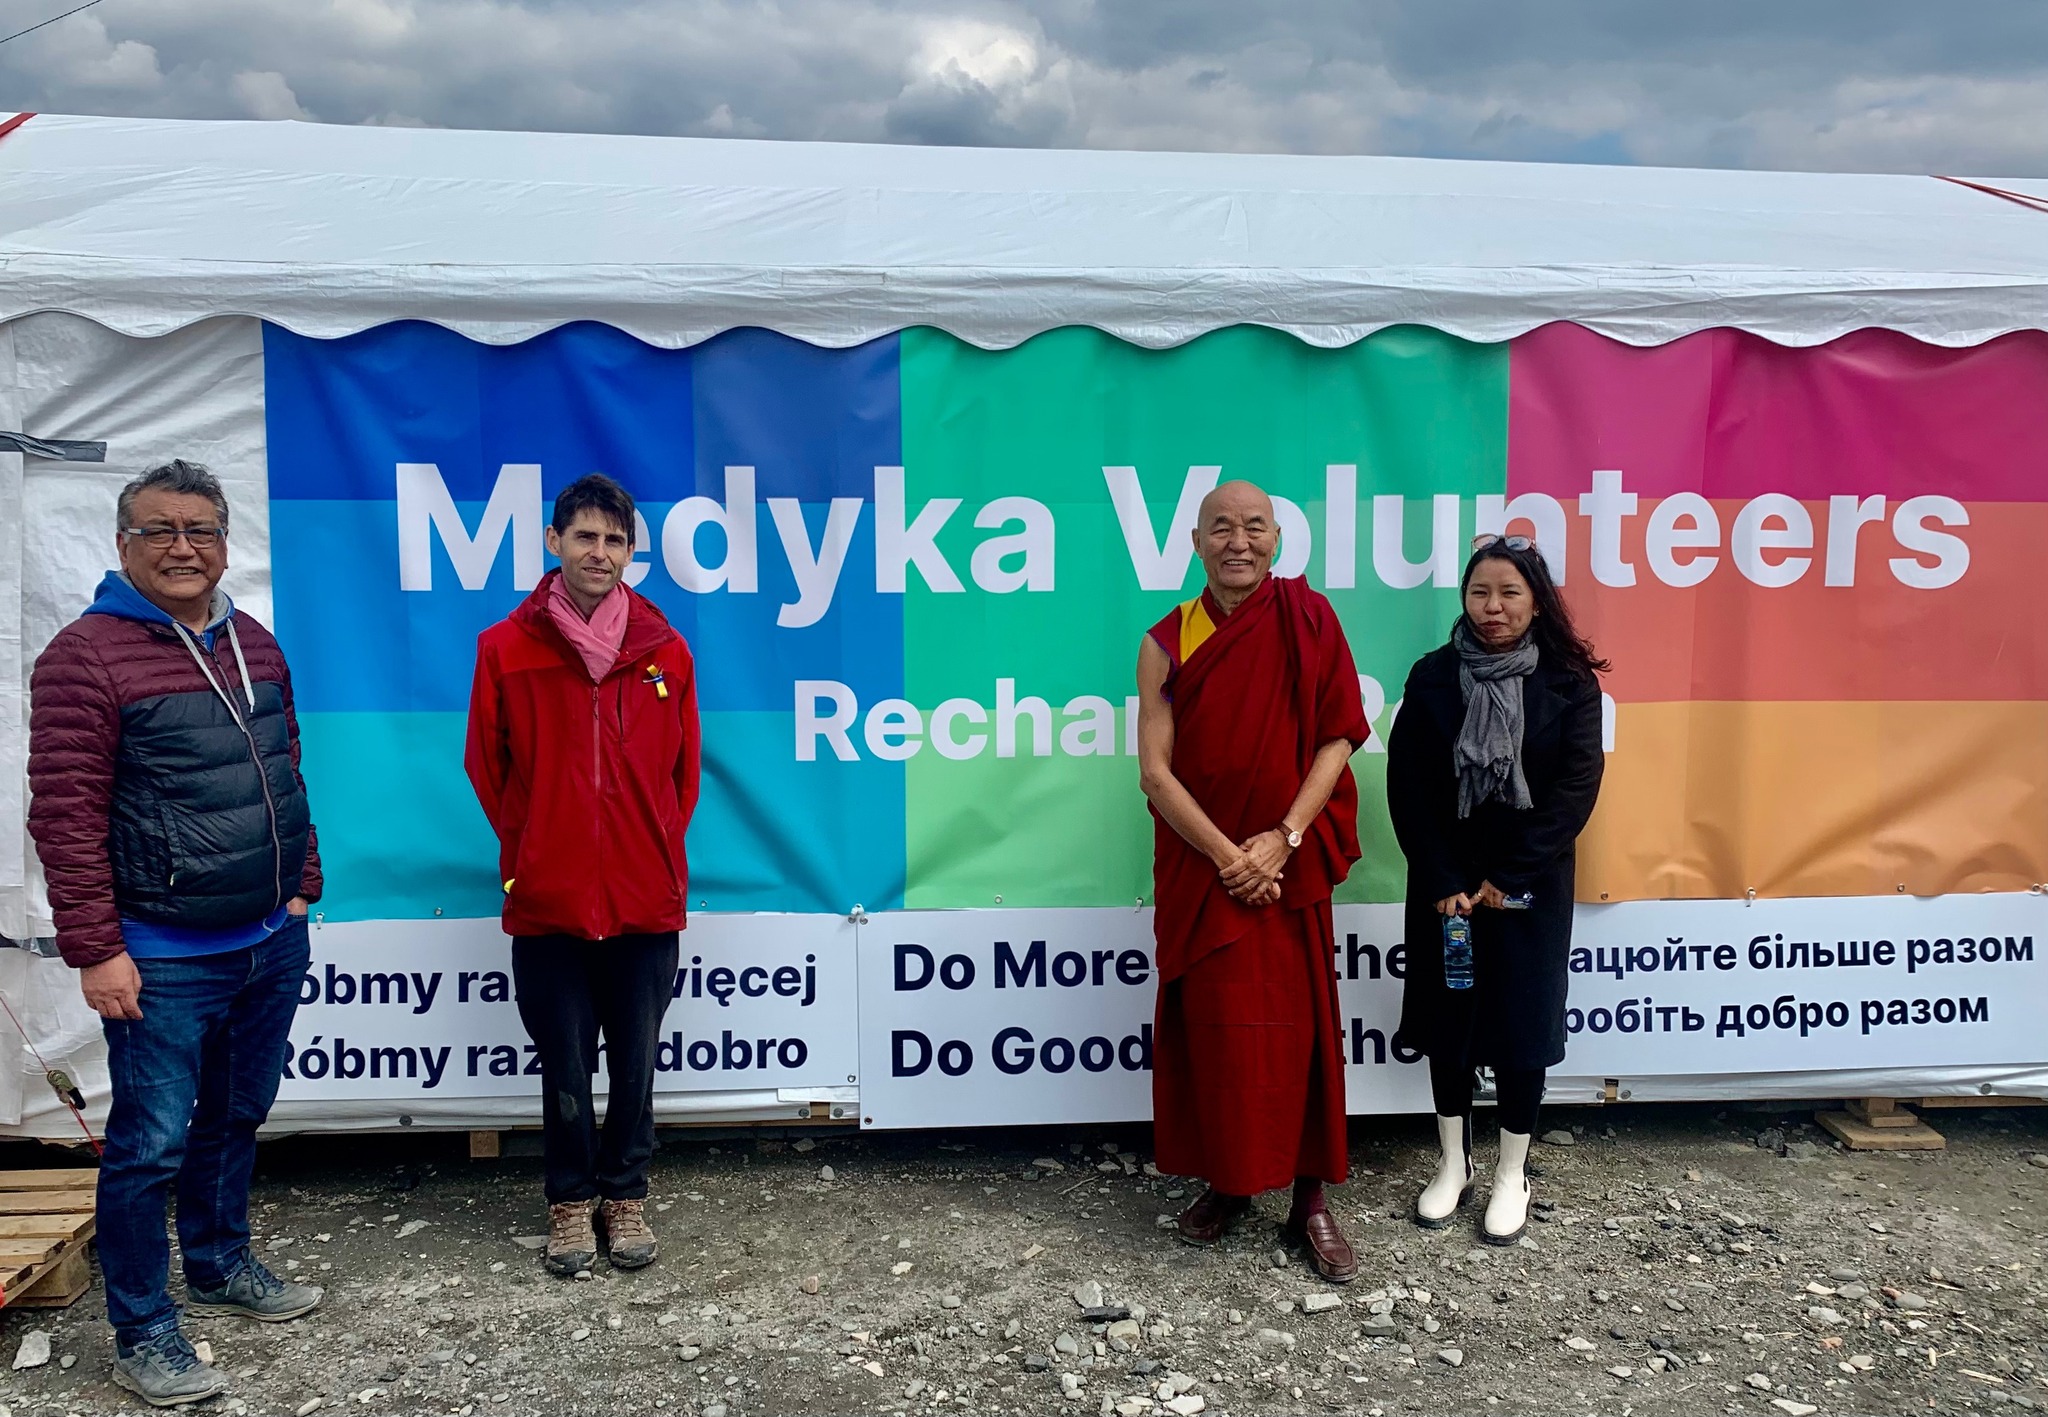 西藏议员图丹旺青与欧洲藏人代表赴波乌边境援助乌克兰难民